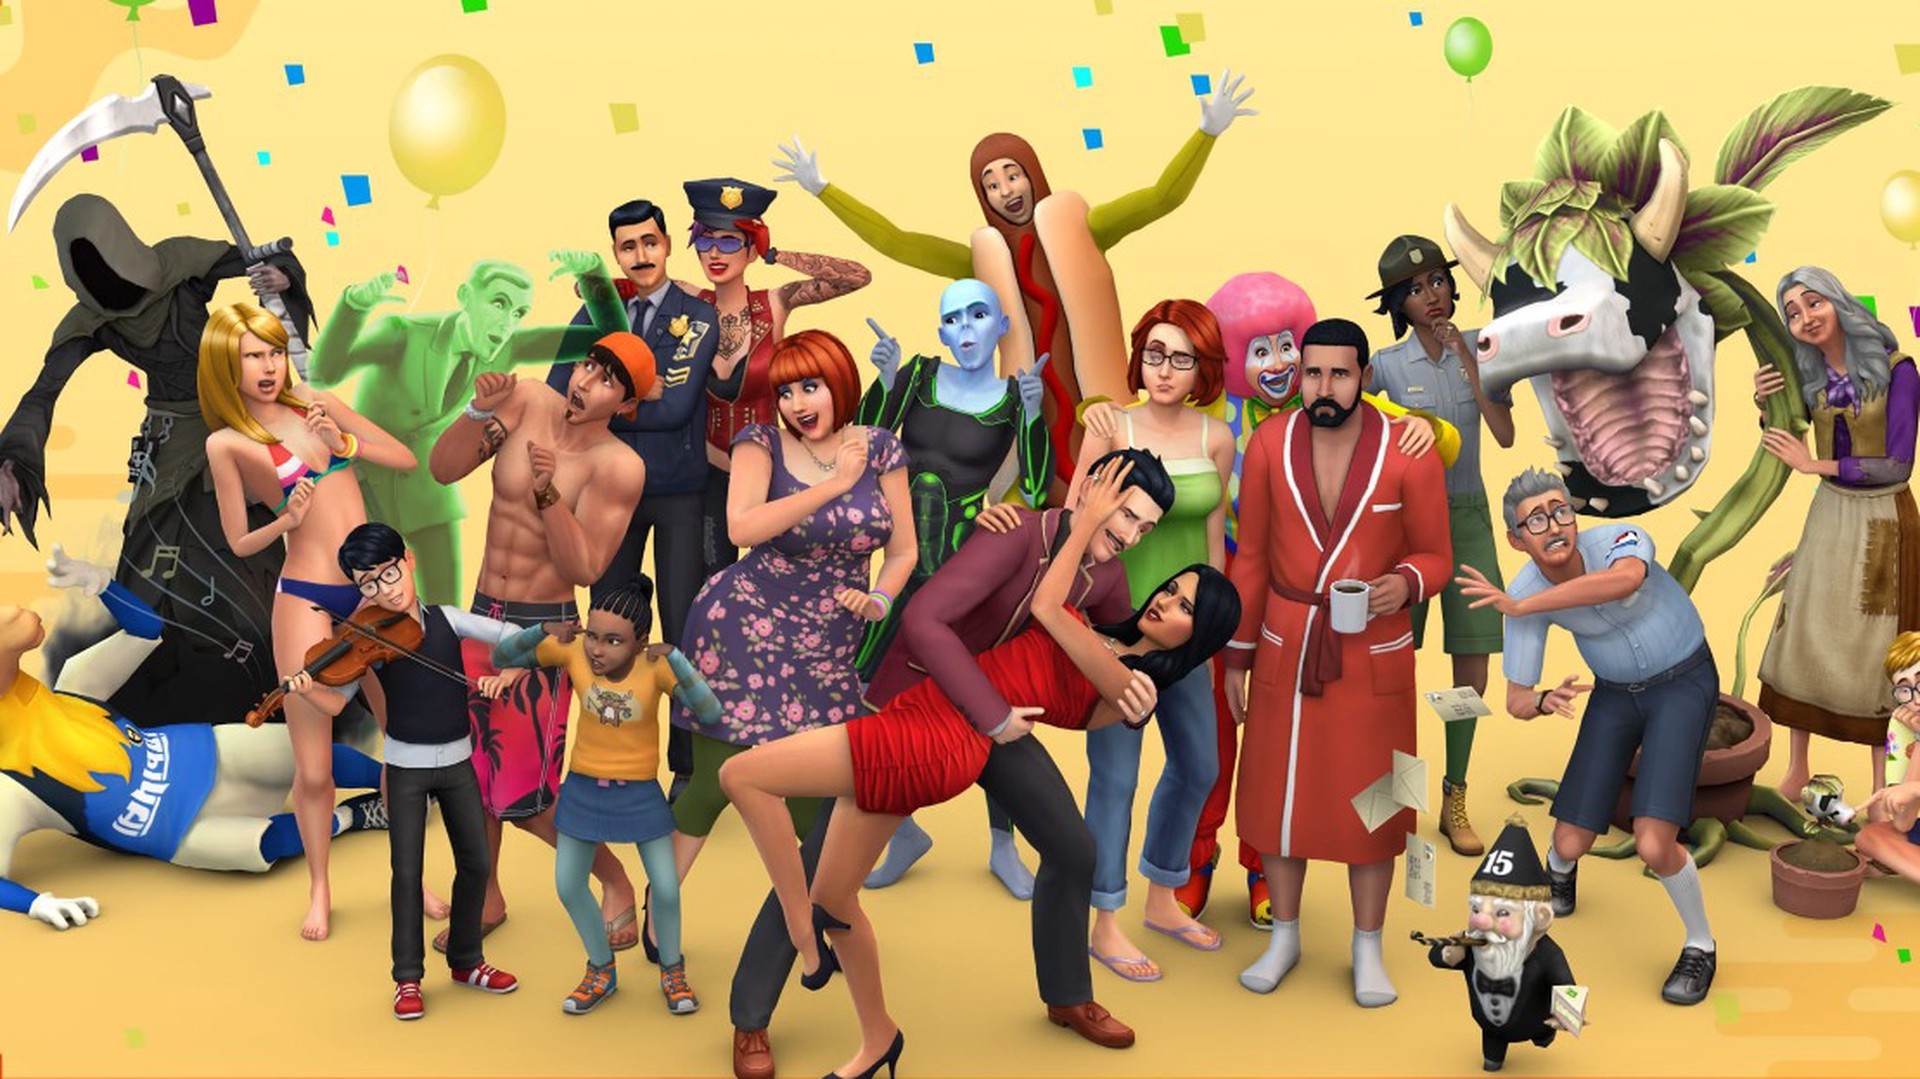 В The Sims 4 вышло обновление для трансгендеров